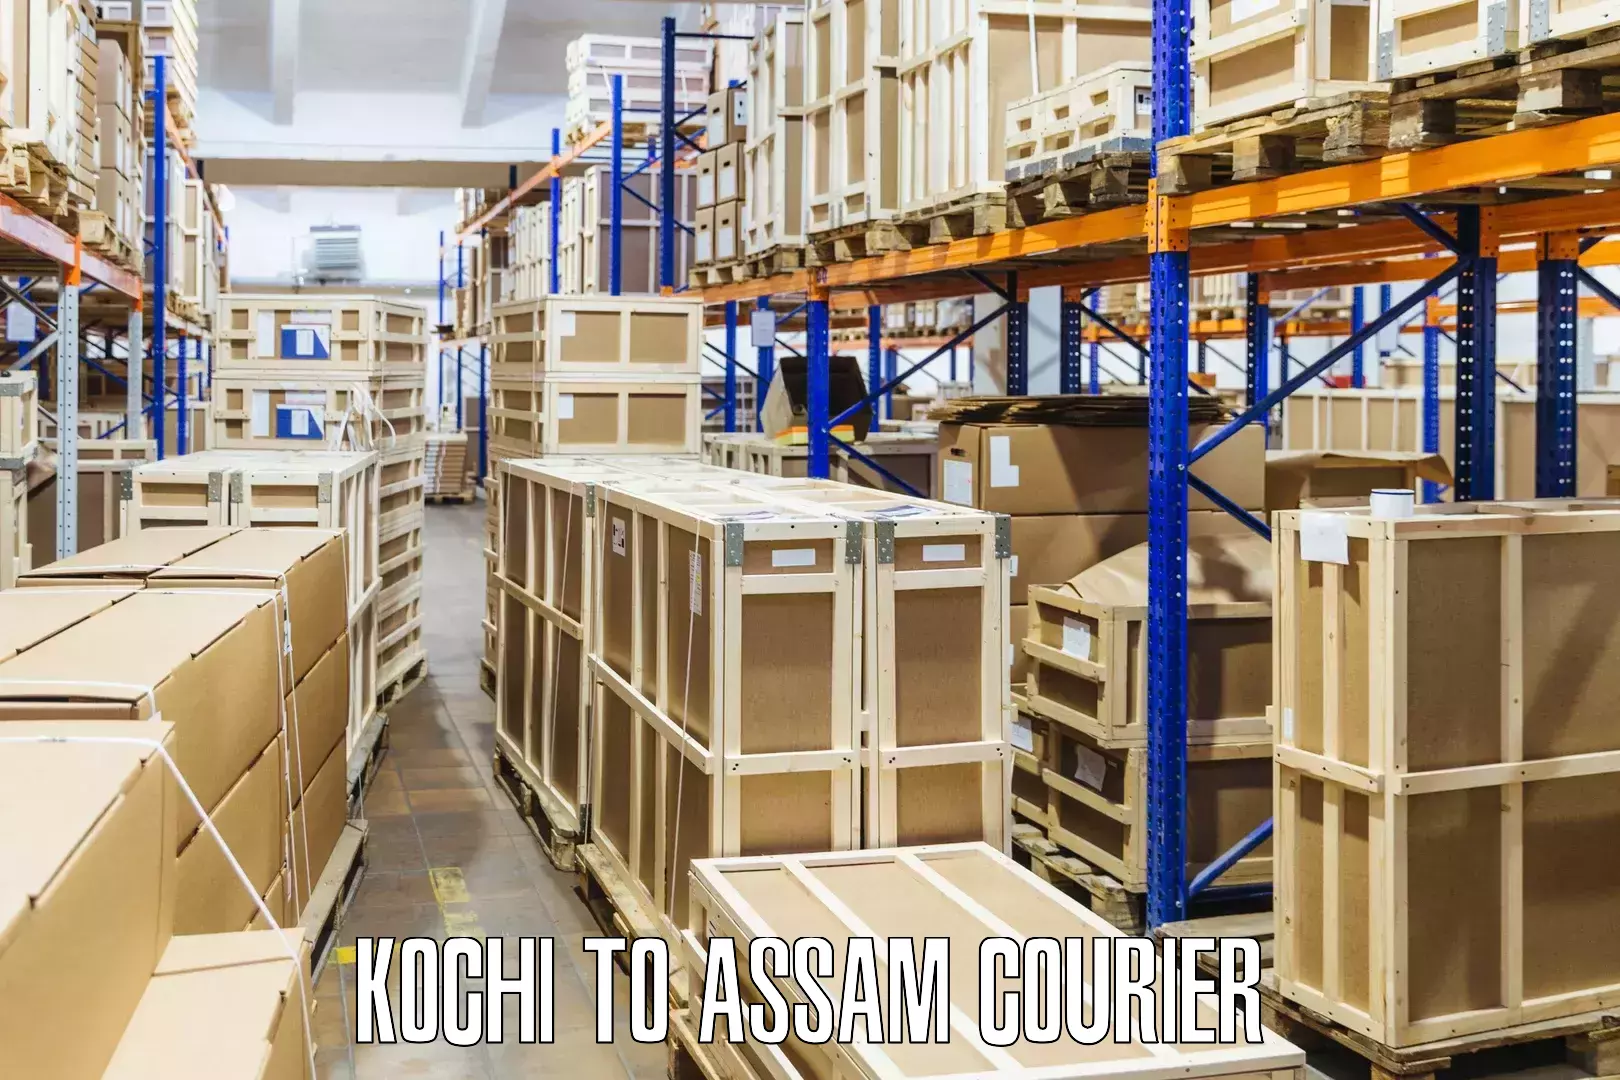 Customizable shipping options Kochi to Pathsala